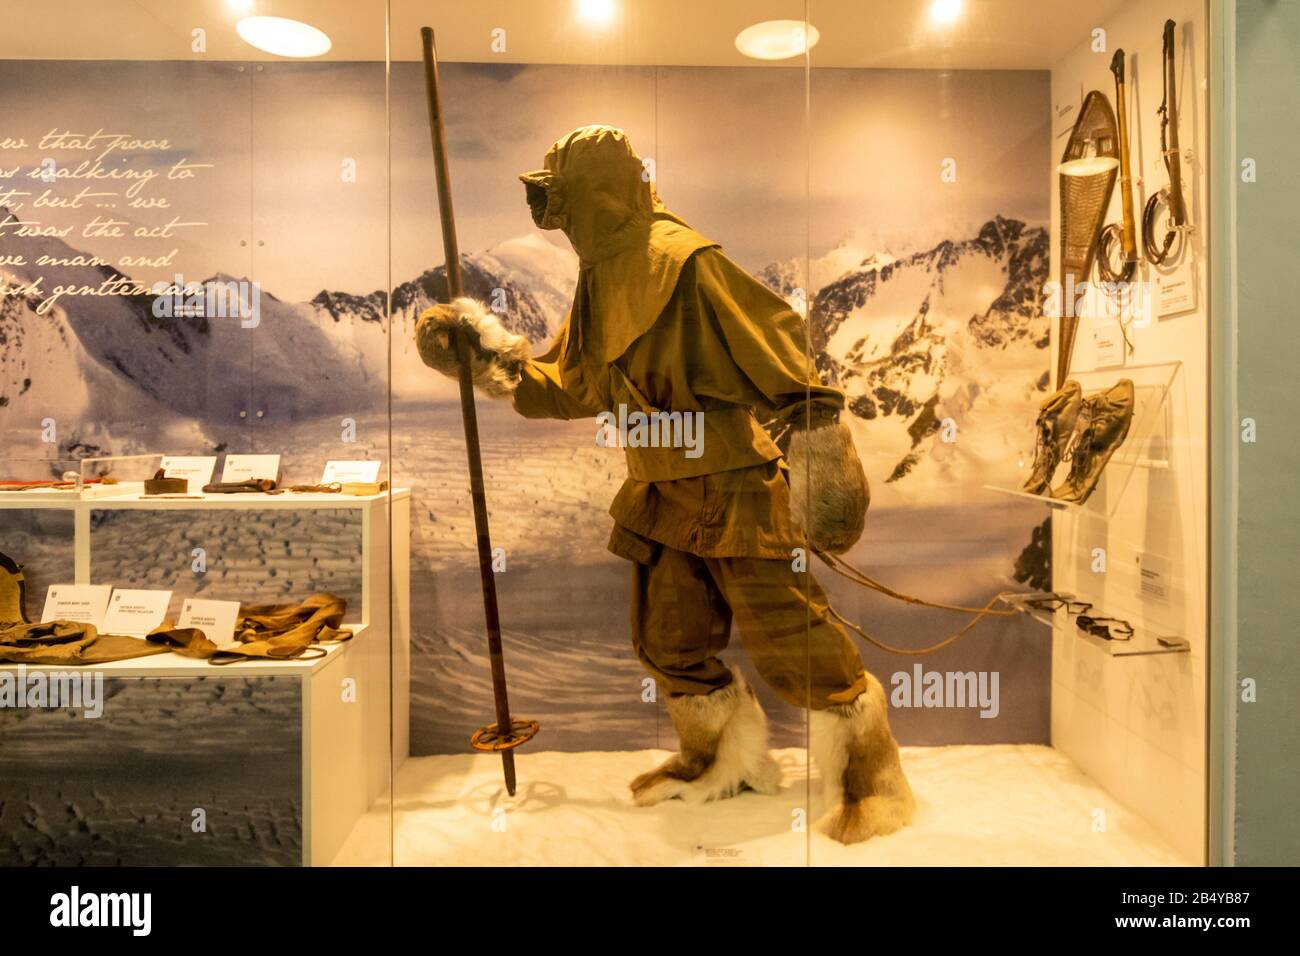 Exposition au musée dans la collection Oates, au Royaume-Uni, montrant des vêtements portés par le capitaine Lawrence Oates, explorateur de l'expédition britannique sur l'Antarctique Banque D'Images